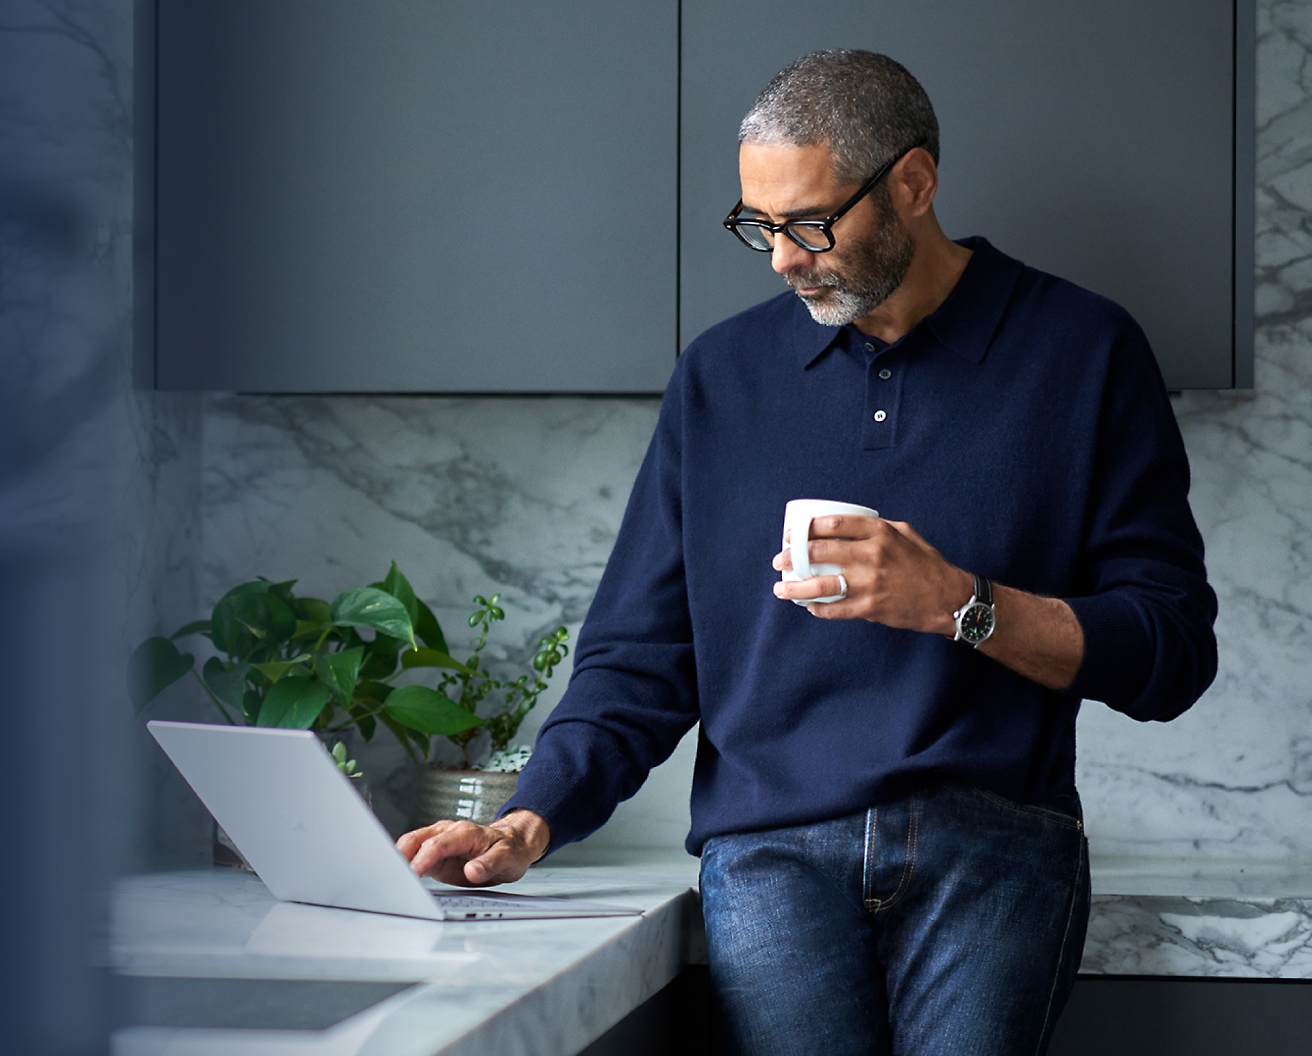 Een man van middelbare leeftijd die een bril draagt, een blauwe trui draagt, een laptop gebruikt en een koffiemok vasthoudt in een moderne keuken.